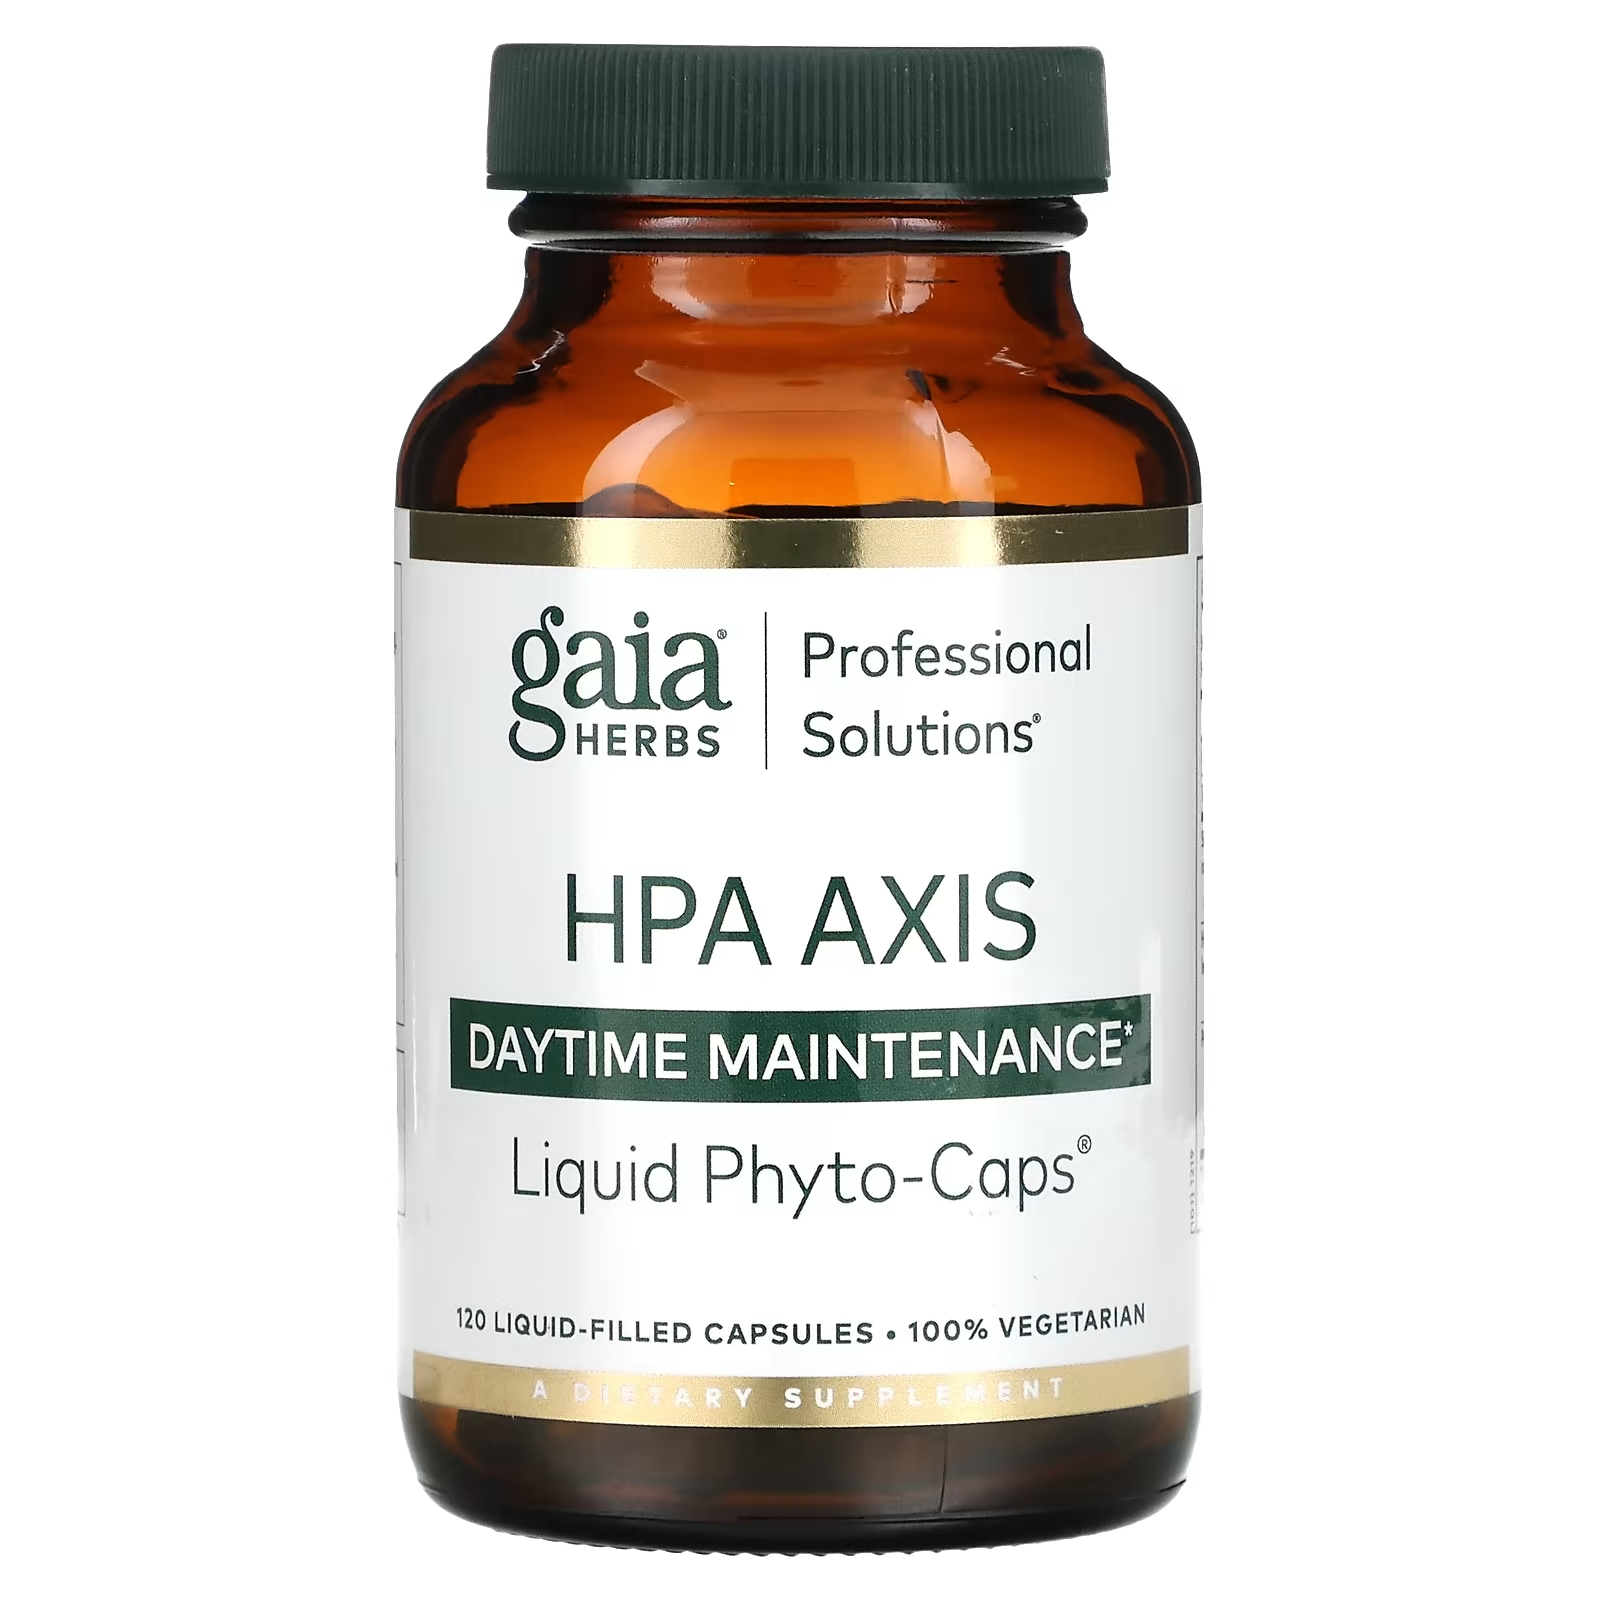 Gaia Herbs Professional Solutions Средство для борьбы со стрессом из серии HPA Axis для равновесия каждый день, 120 капсул gaia herbs professional solutions средство для поддержки щитовидной железы 120 капсул